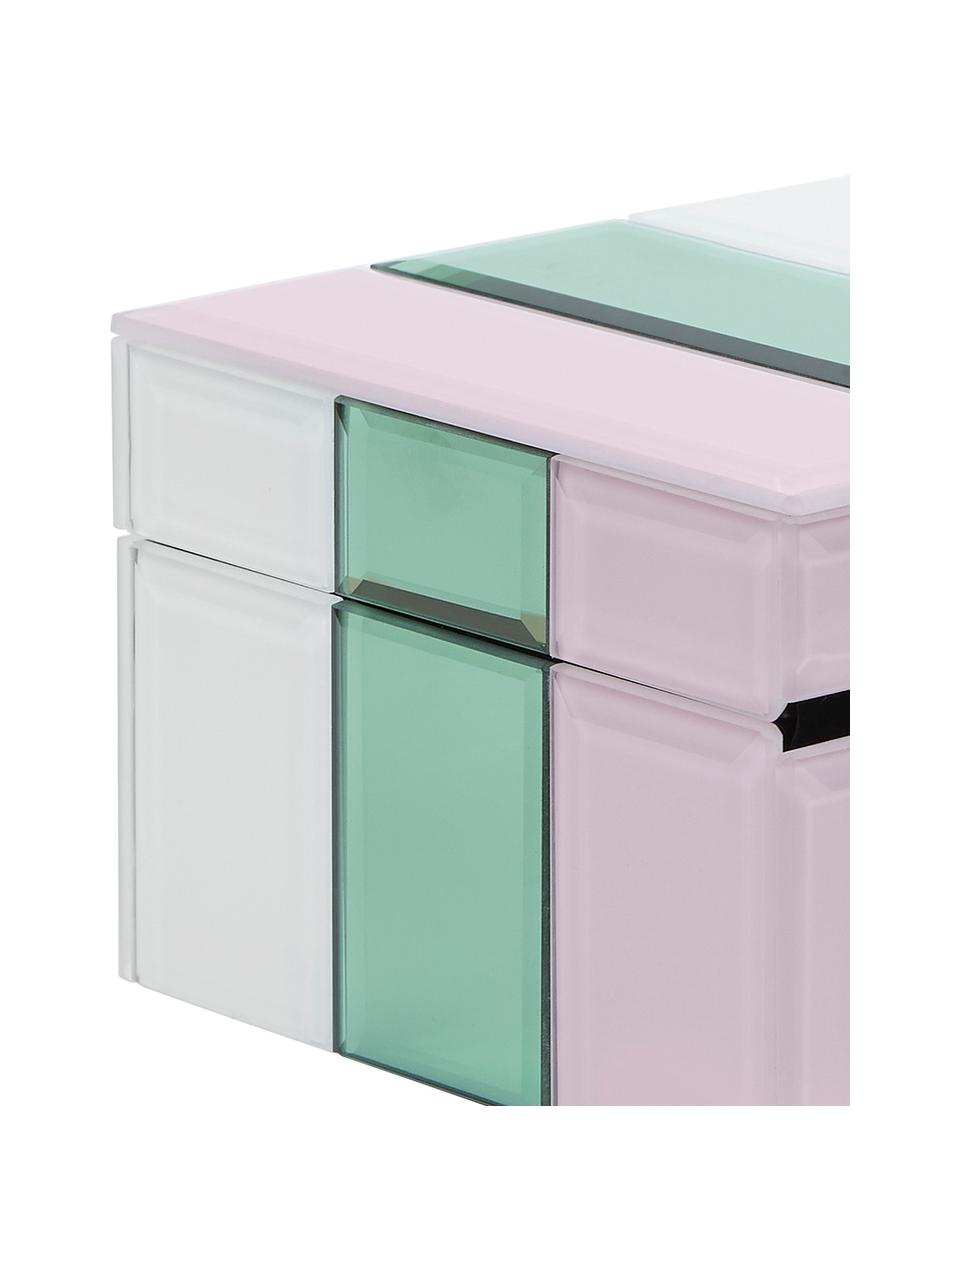 Schmuckbox Pastel aus Glas, Box: Mitteldichte Holzfaserpla, Weiß, Mint, Rosa, B 13 x H 9 cm